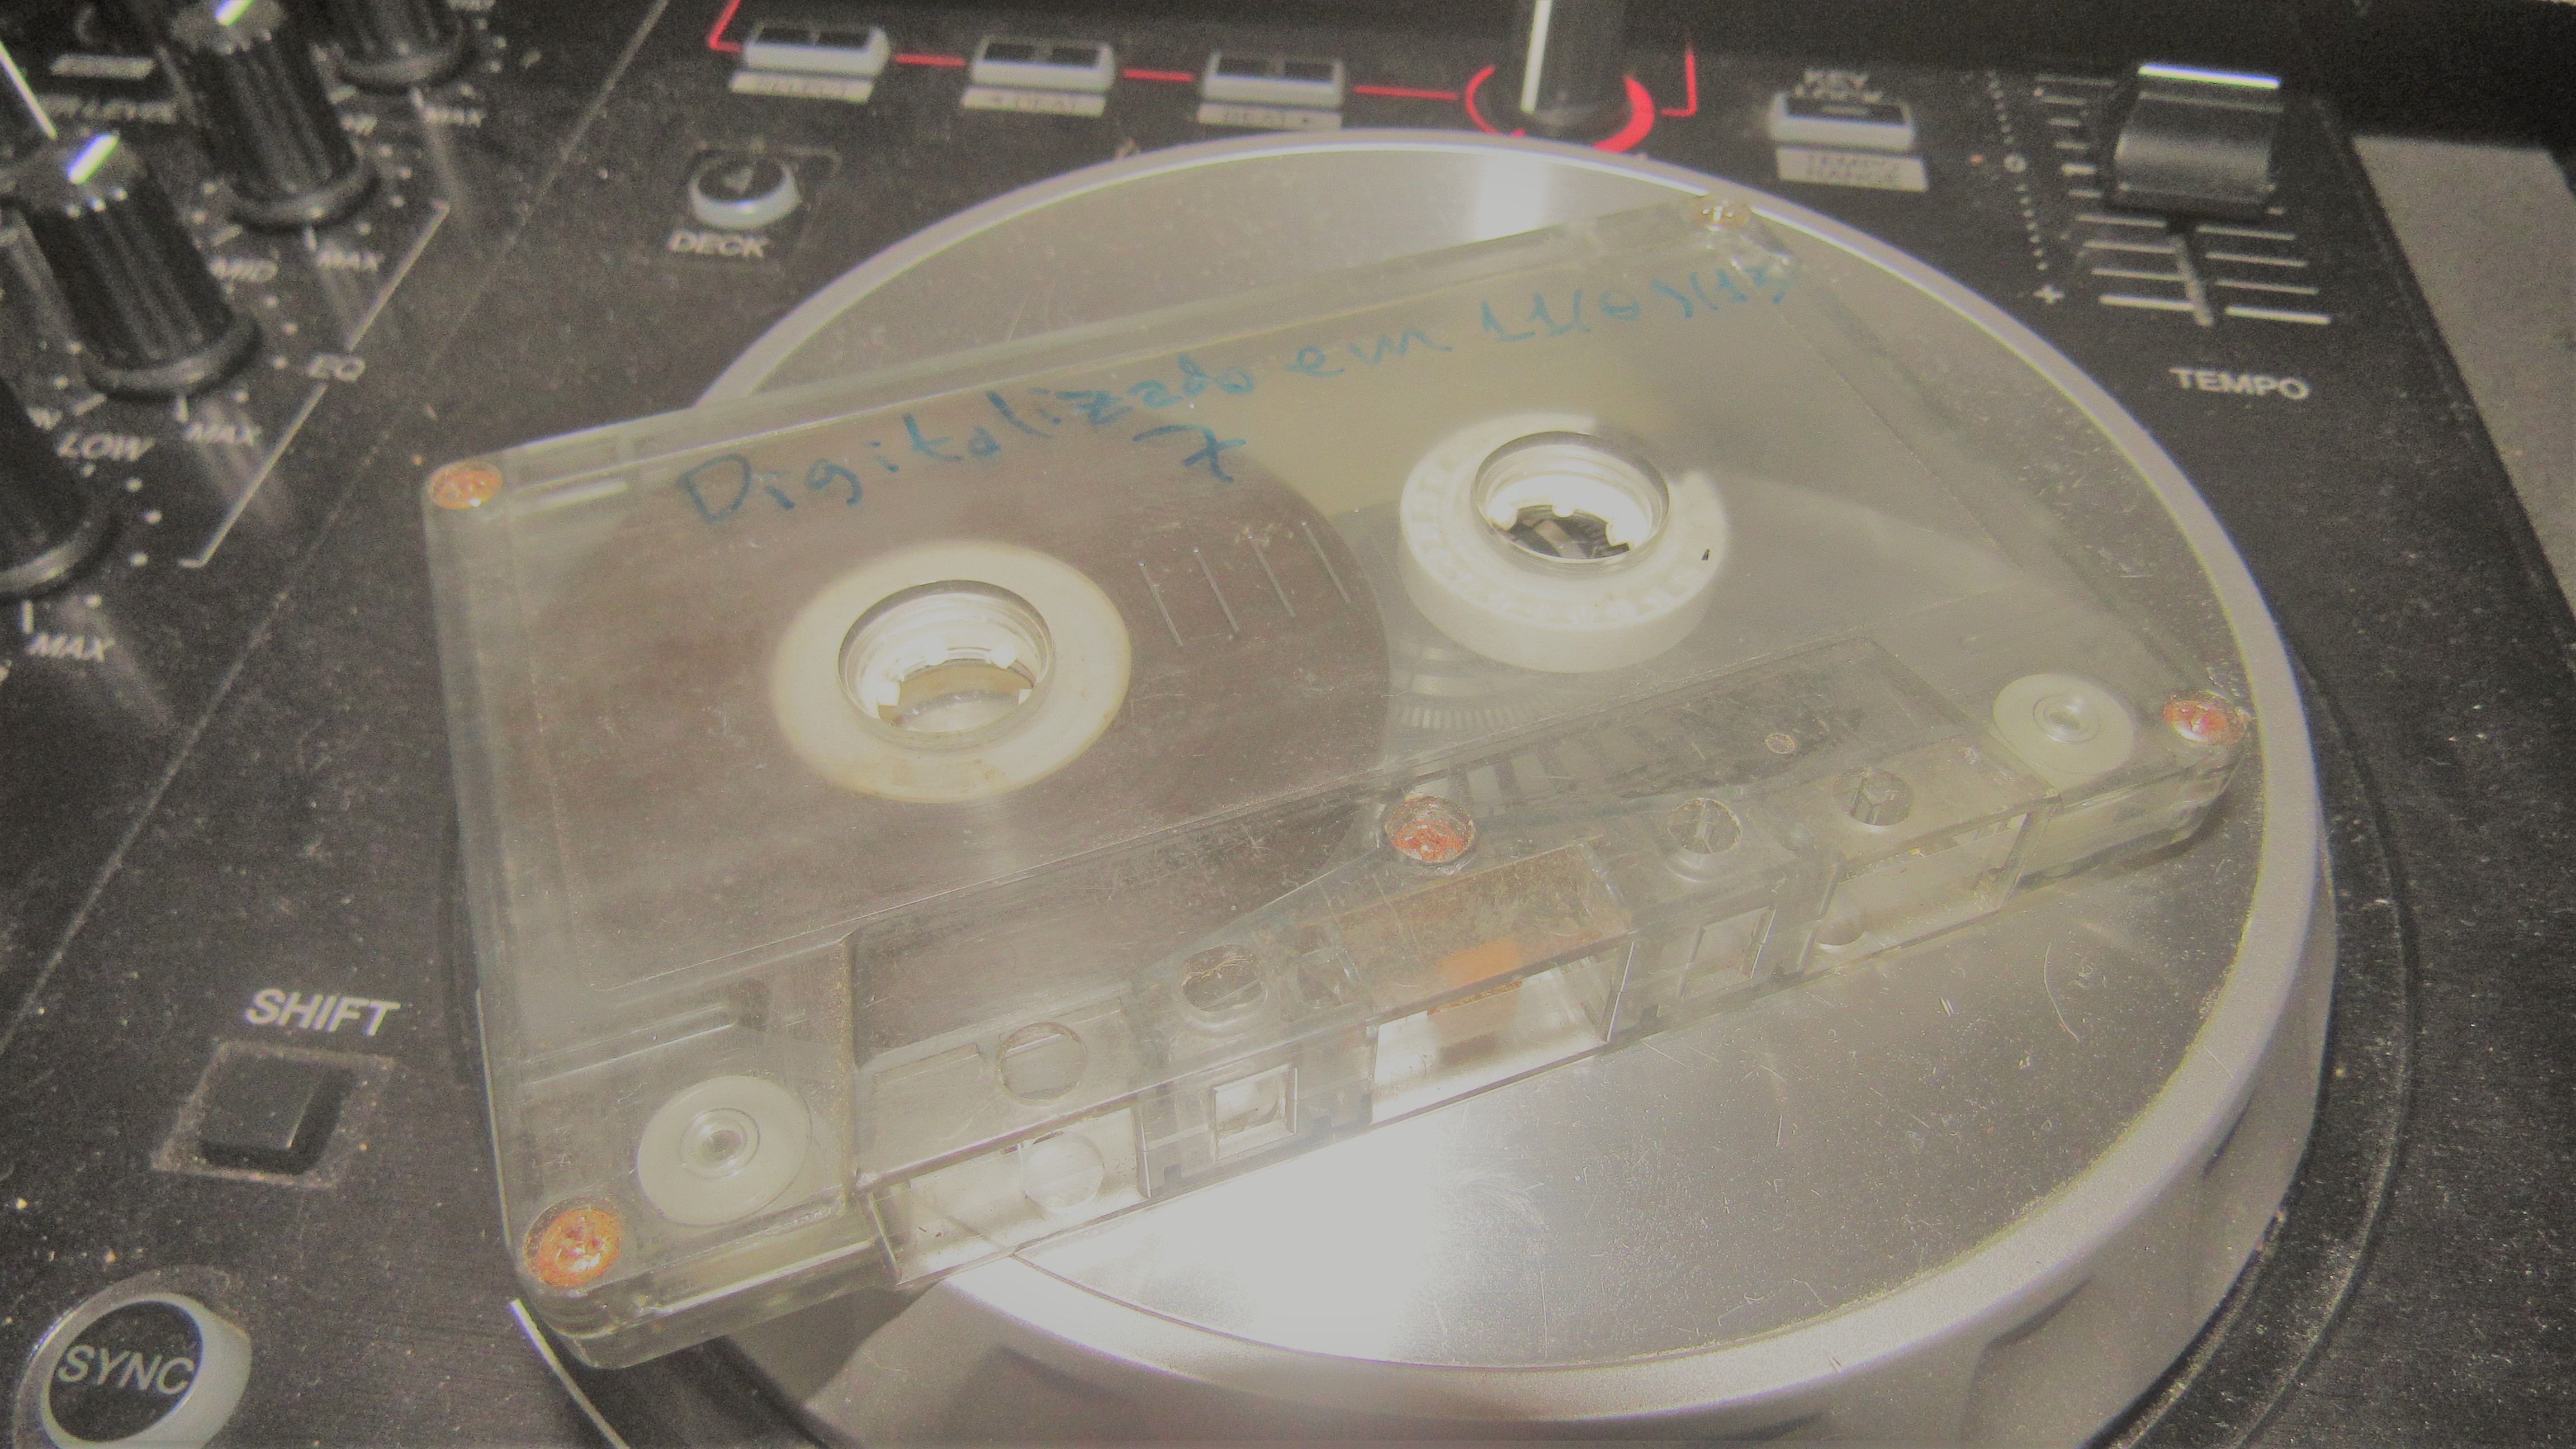 Fita cassete onde havia um set de mixagem gravado há 10 anos.